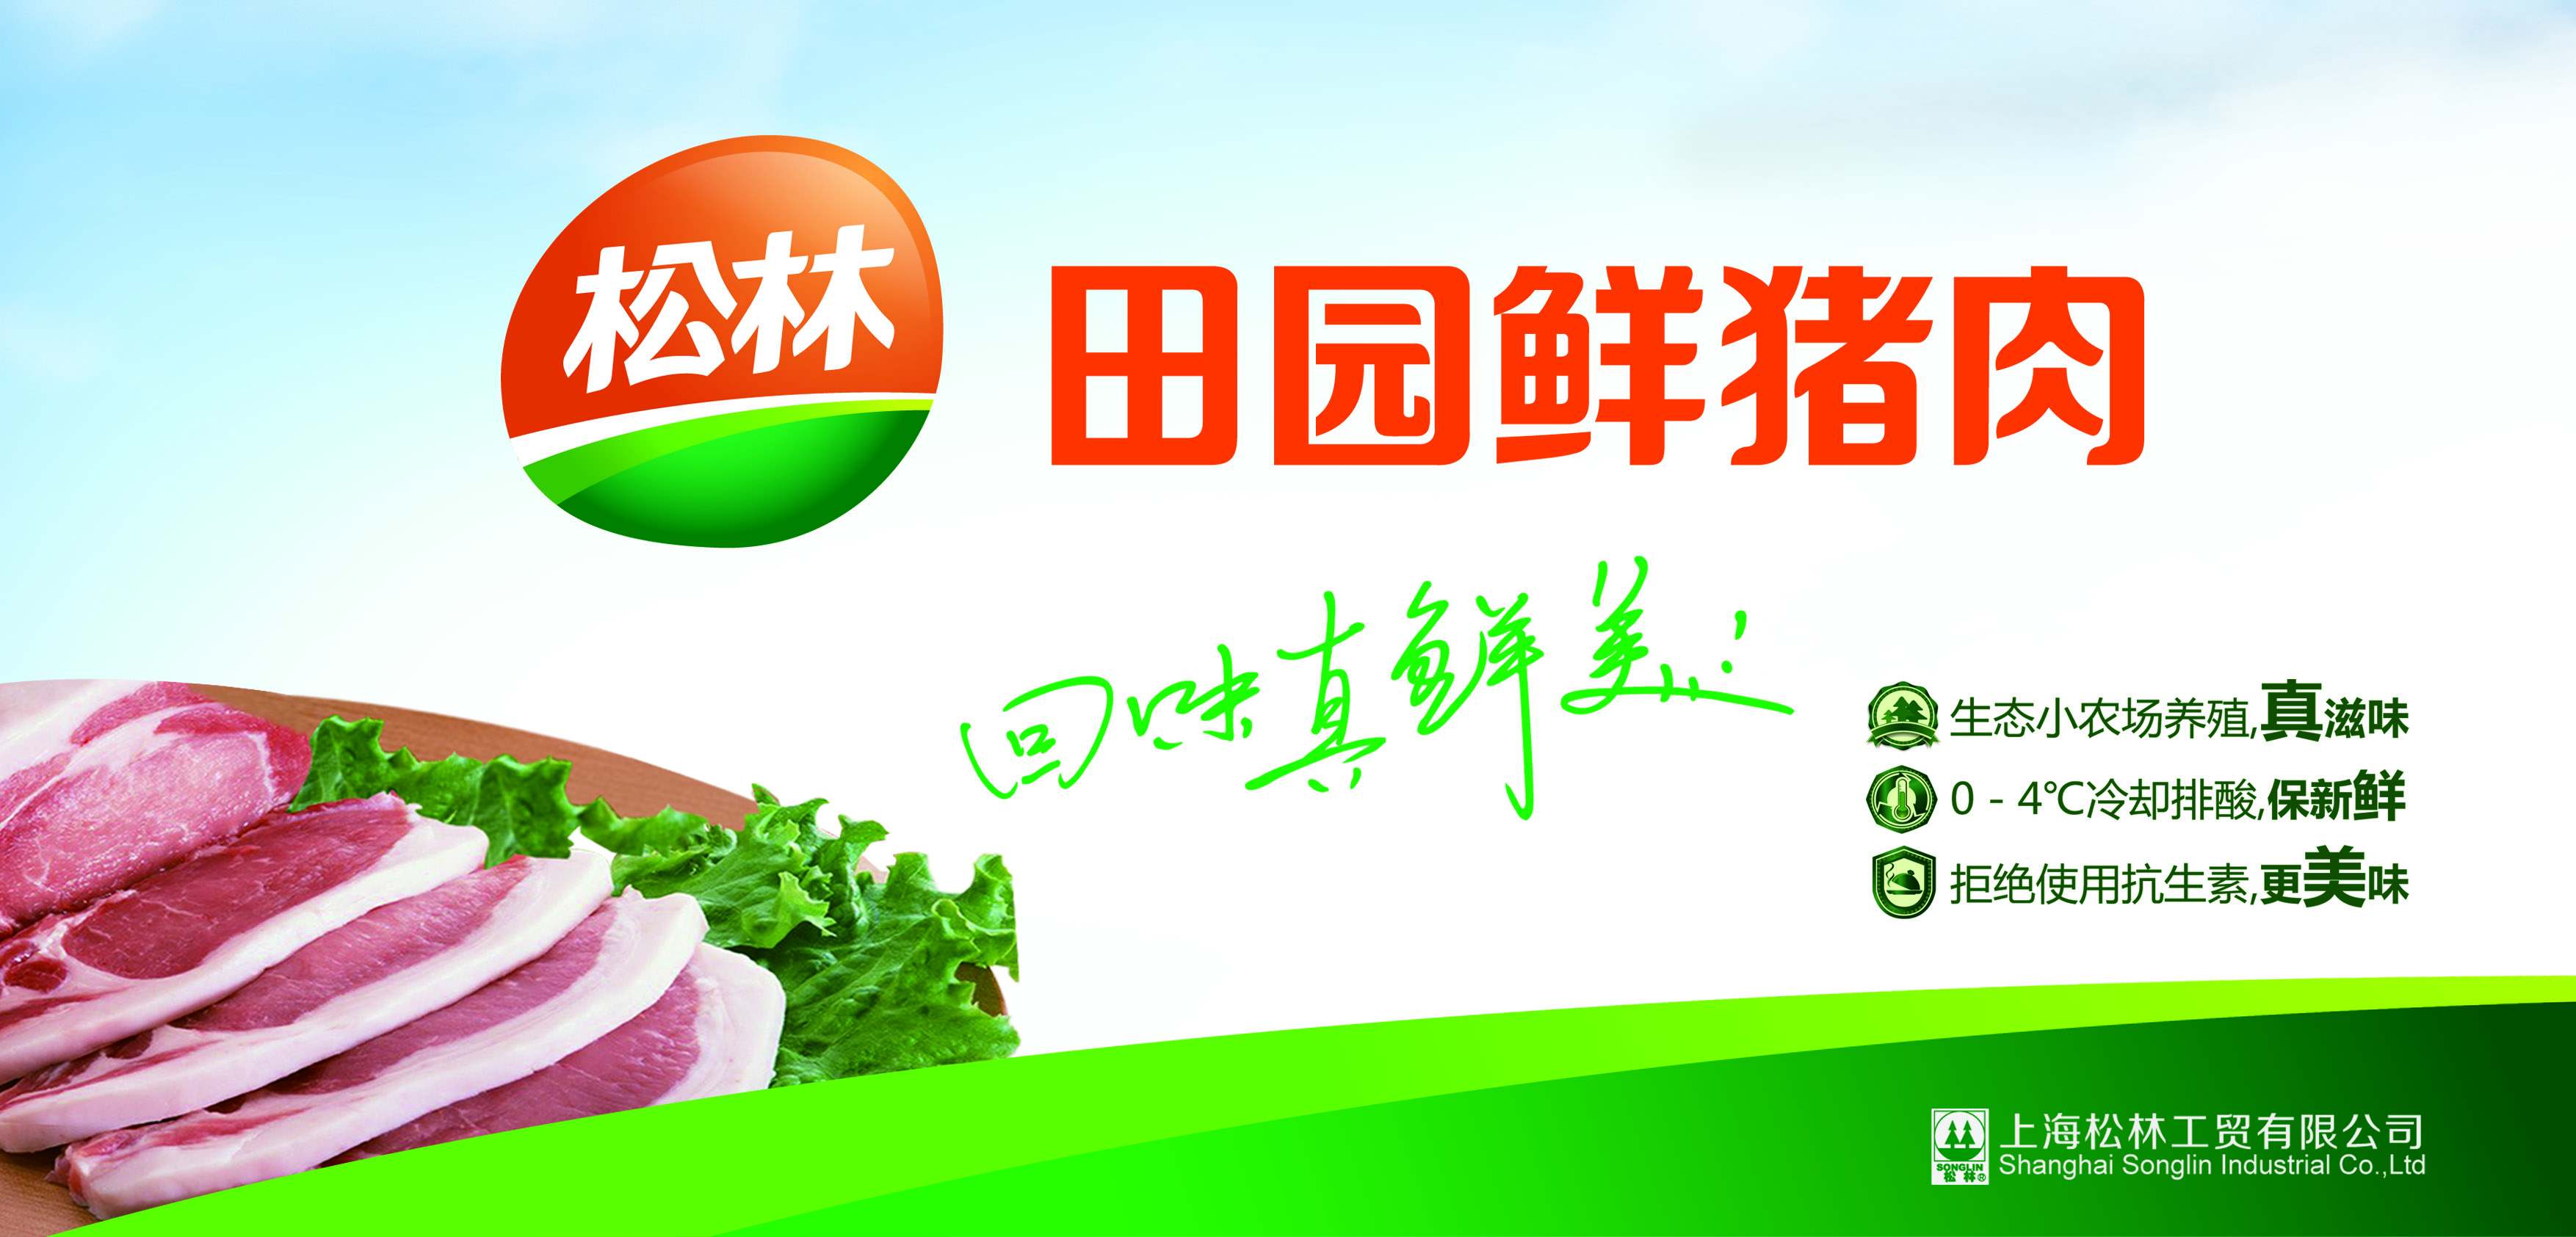 三松IP化营销帮助上海松林开辟“田园鲜猪肉”品类战略定位